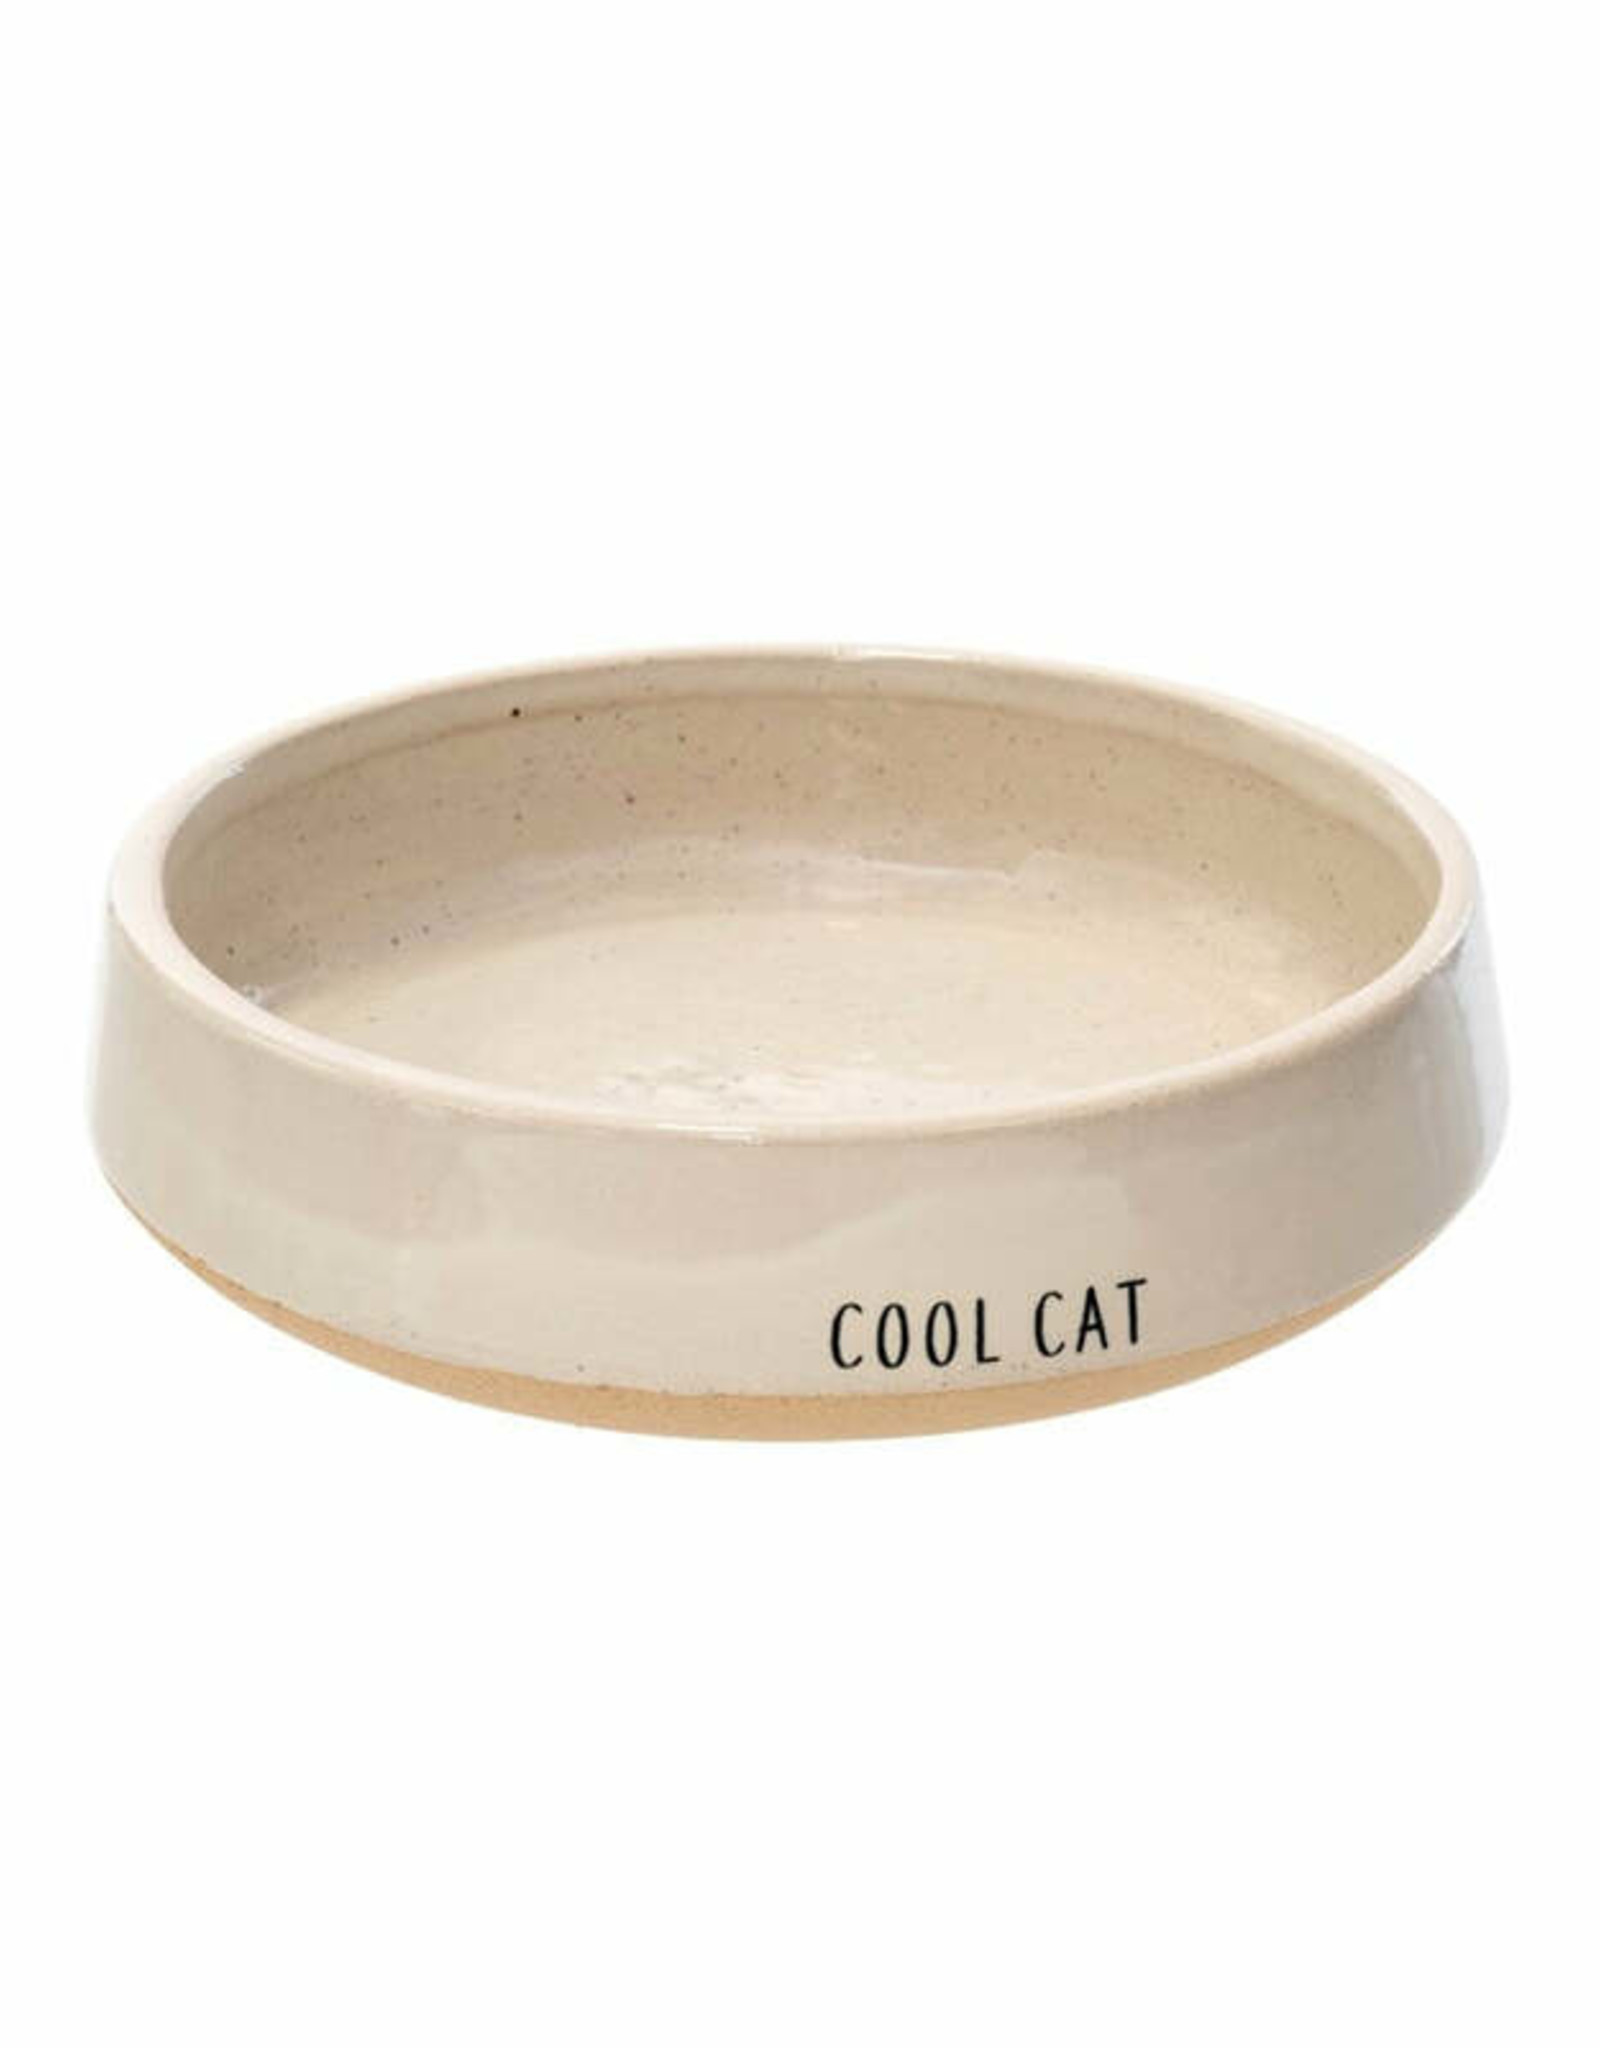 Cool Cat Bowl